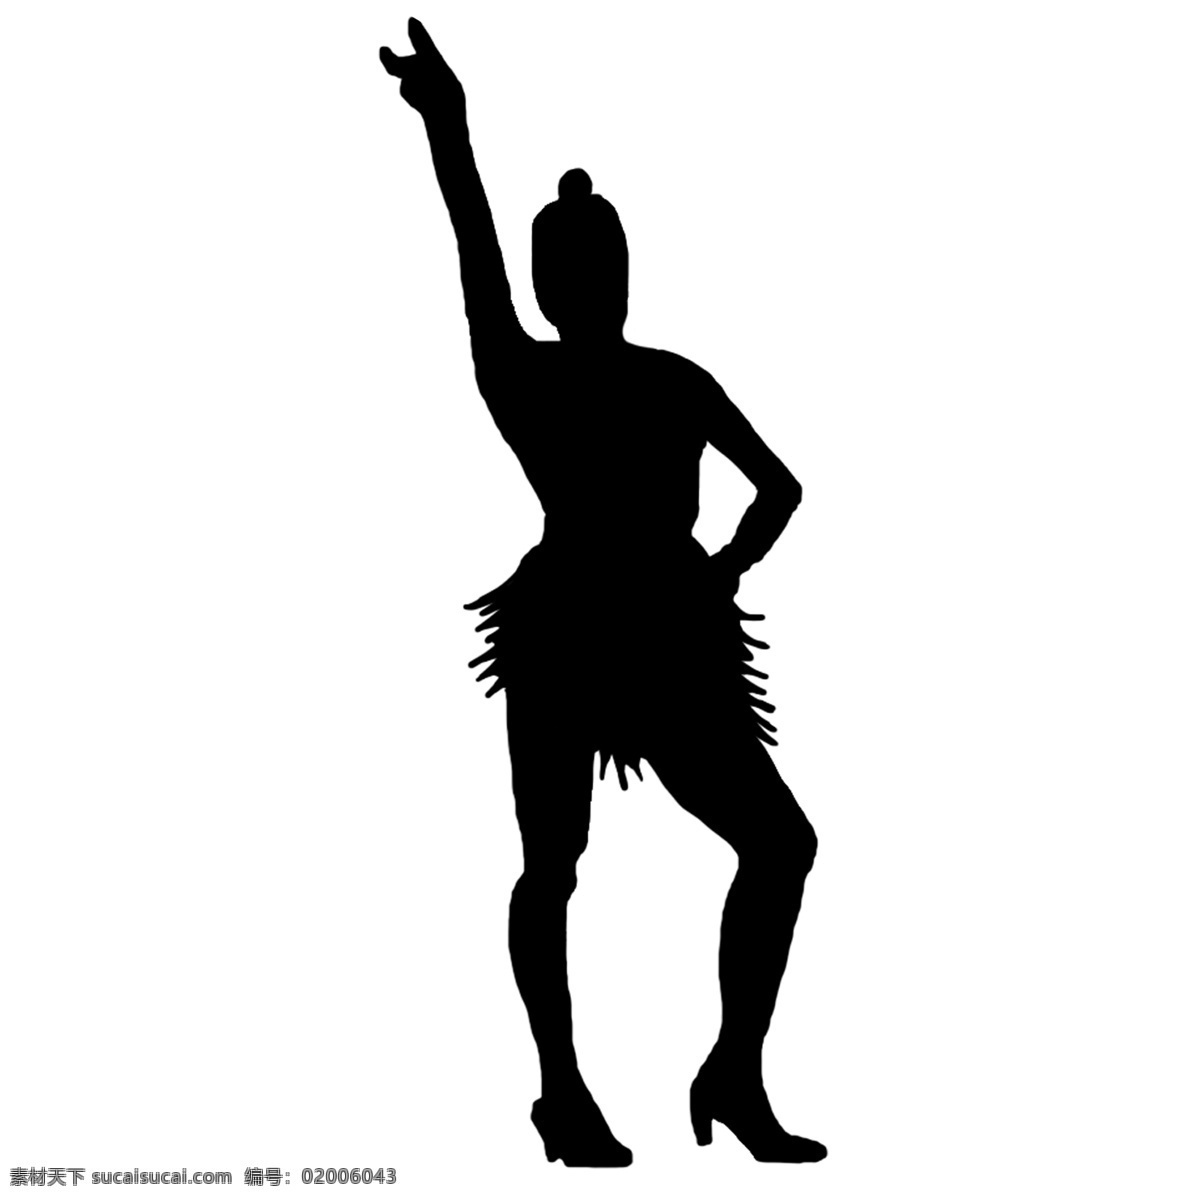 矢量 桑巴 单人舞 剪影 桑巴舞 舞者 服装 美国 拉丁 吸引力 舞蹈 衣服 文化 节日 黑色的 传统的 女 时尚 羽毛 表演者 插图 歌舞表演 巴西 化妆舞会